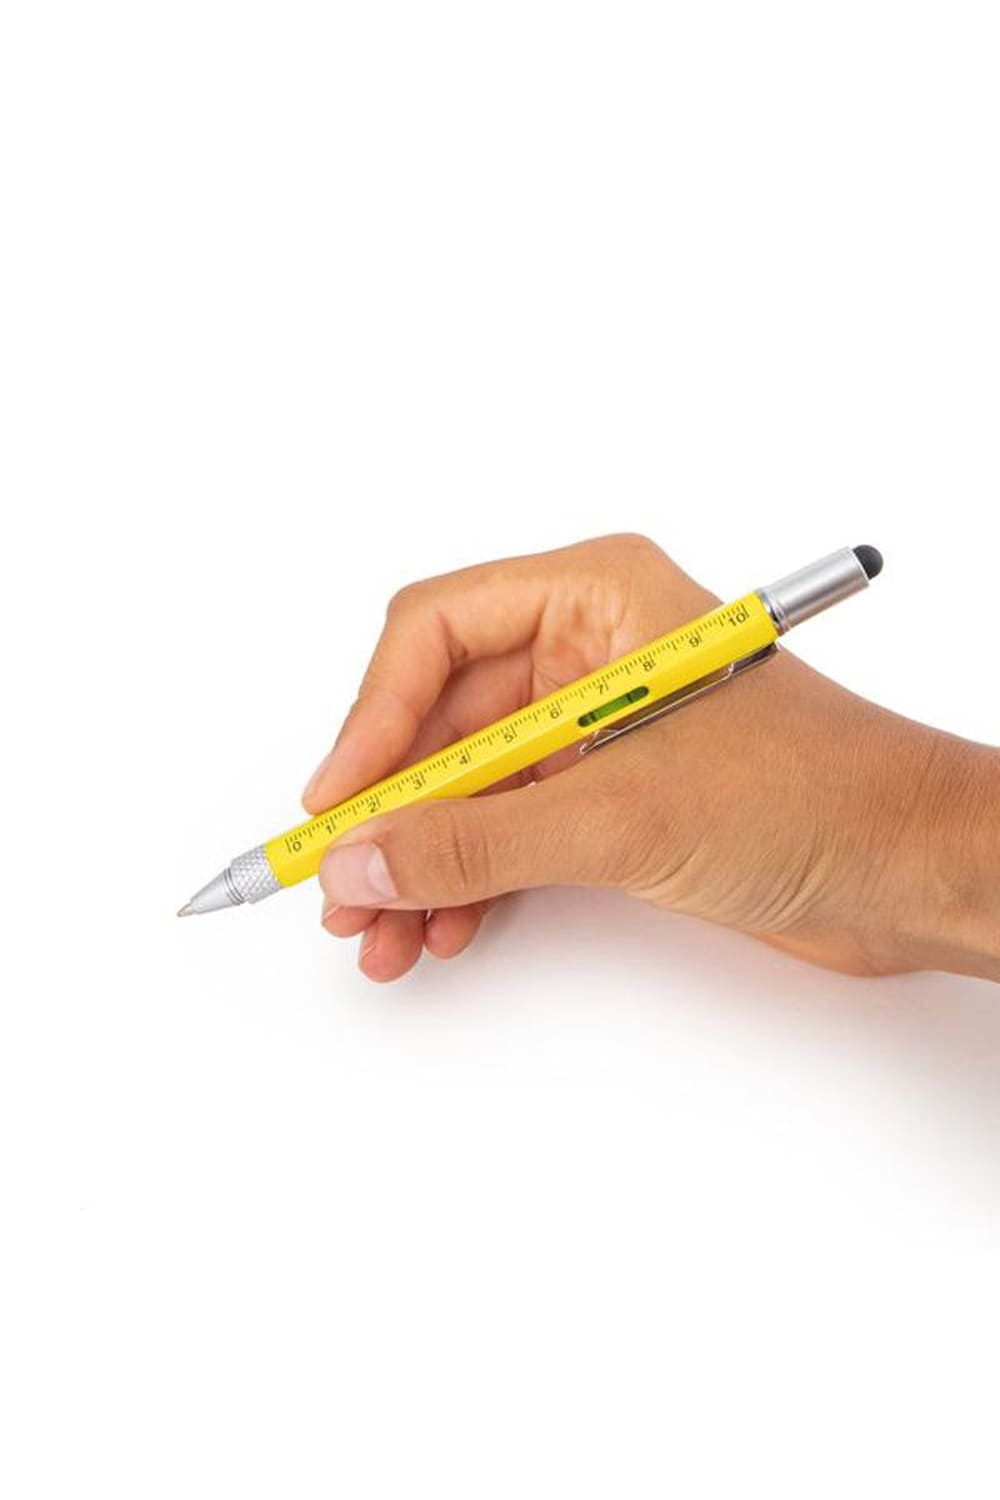 Kugelschreiber mit Lineal als Kindergeschenk fuer die Schule oder als Buerogeschenk.